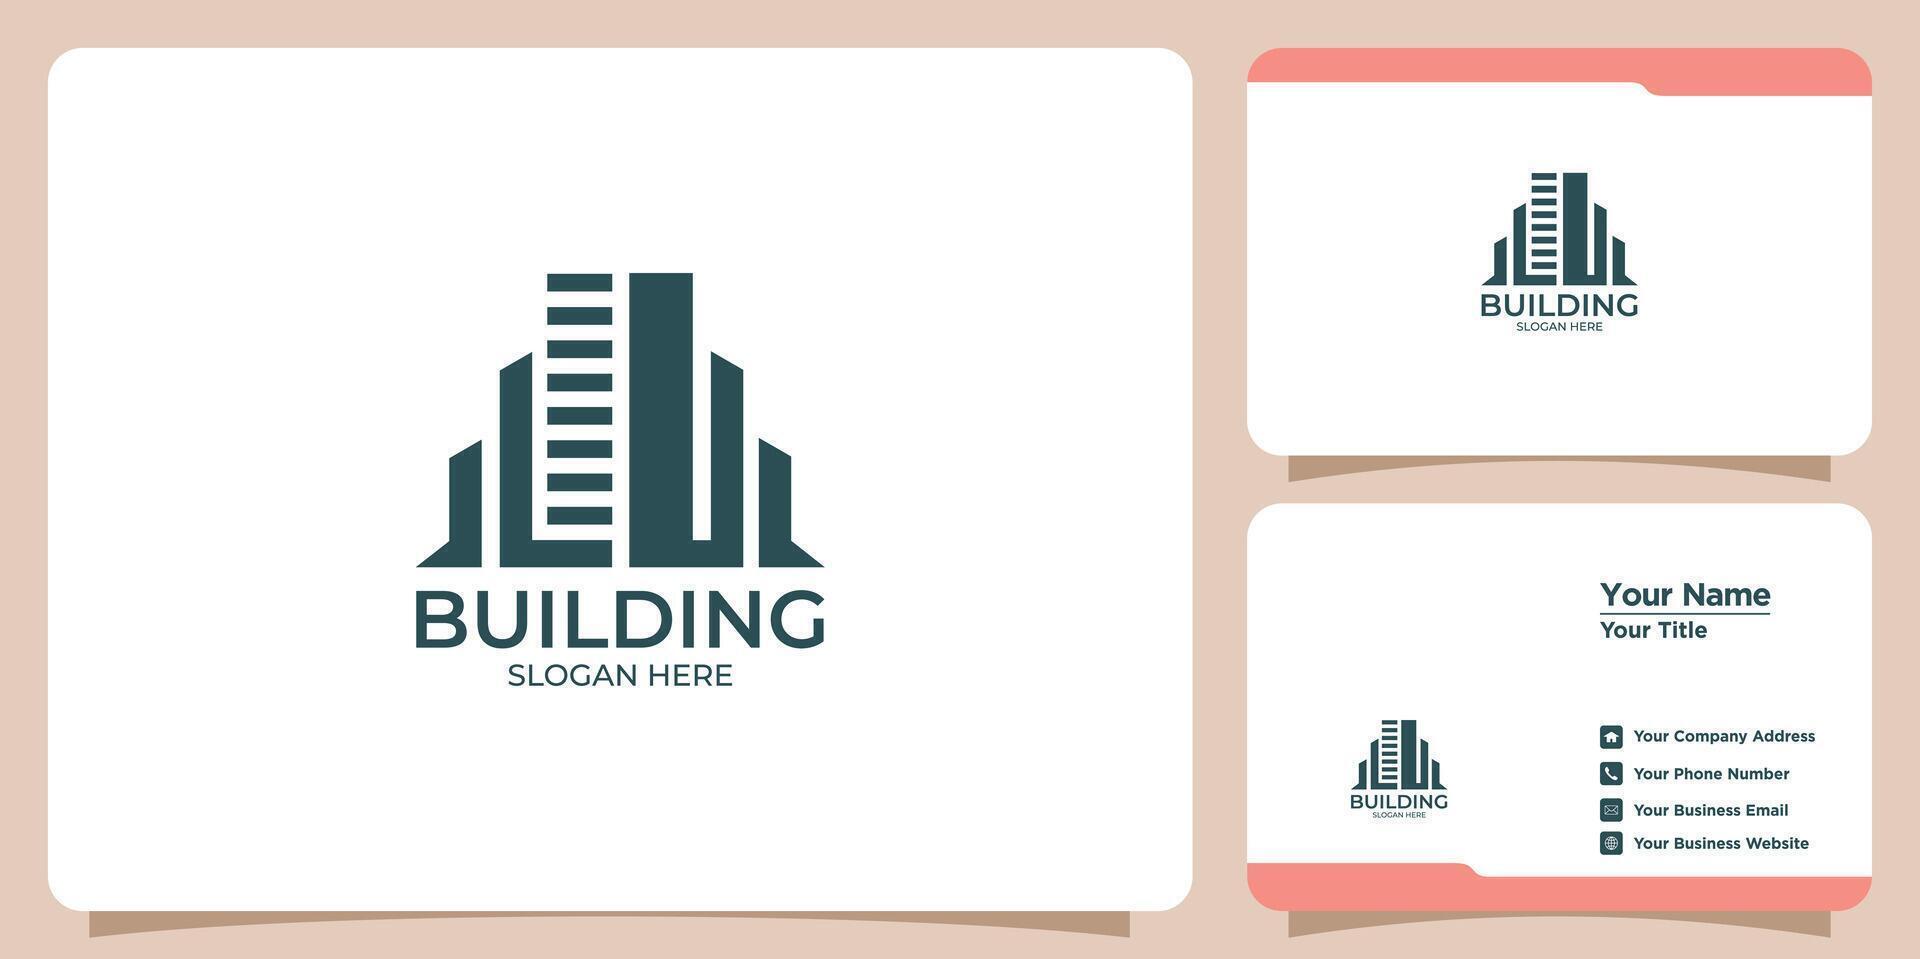 edificios real inmuebles logos y negocio tarjetas vector